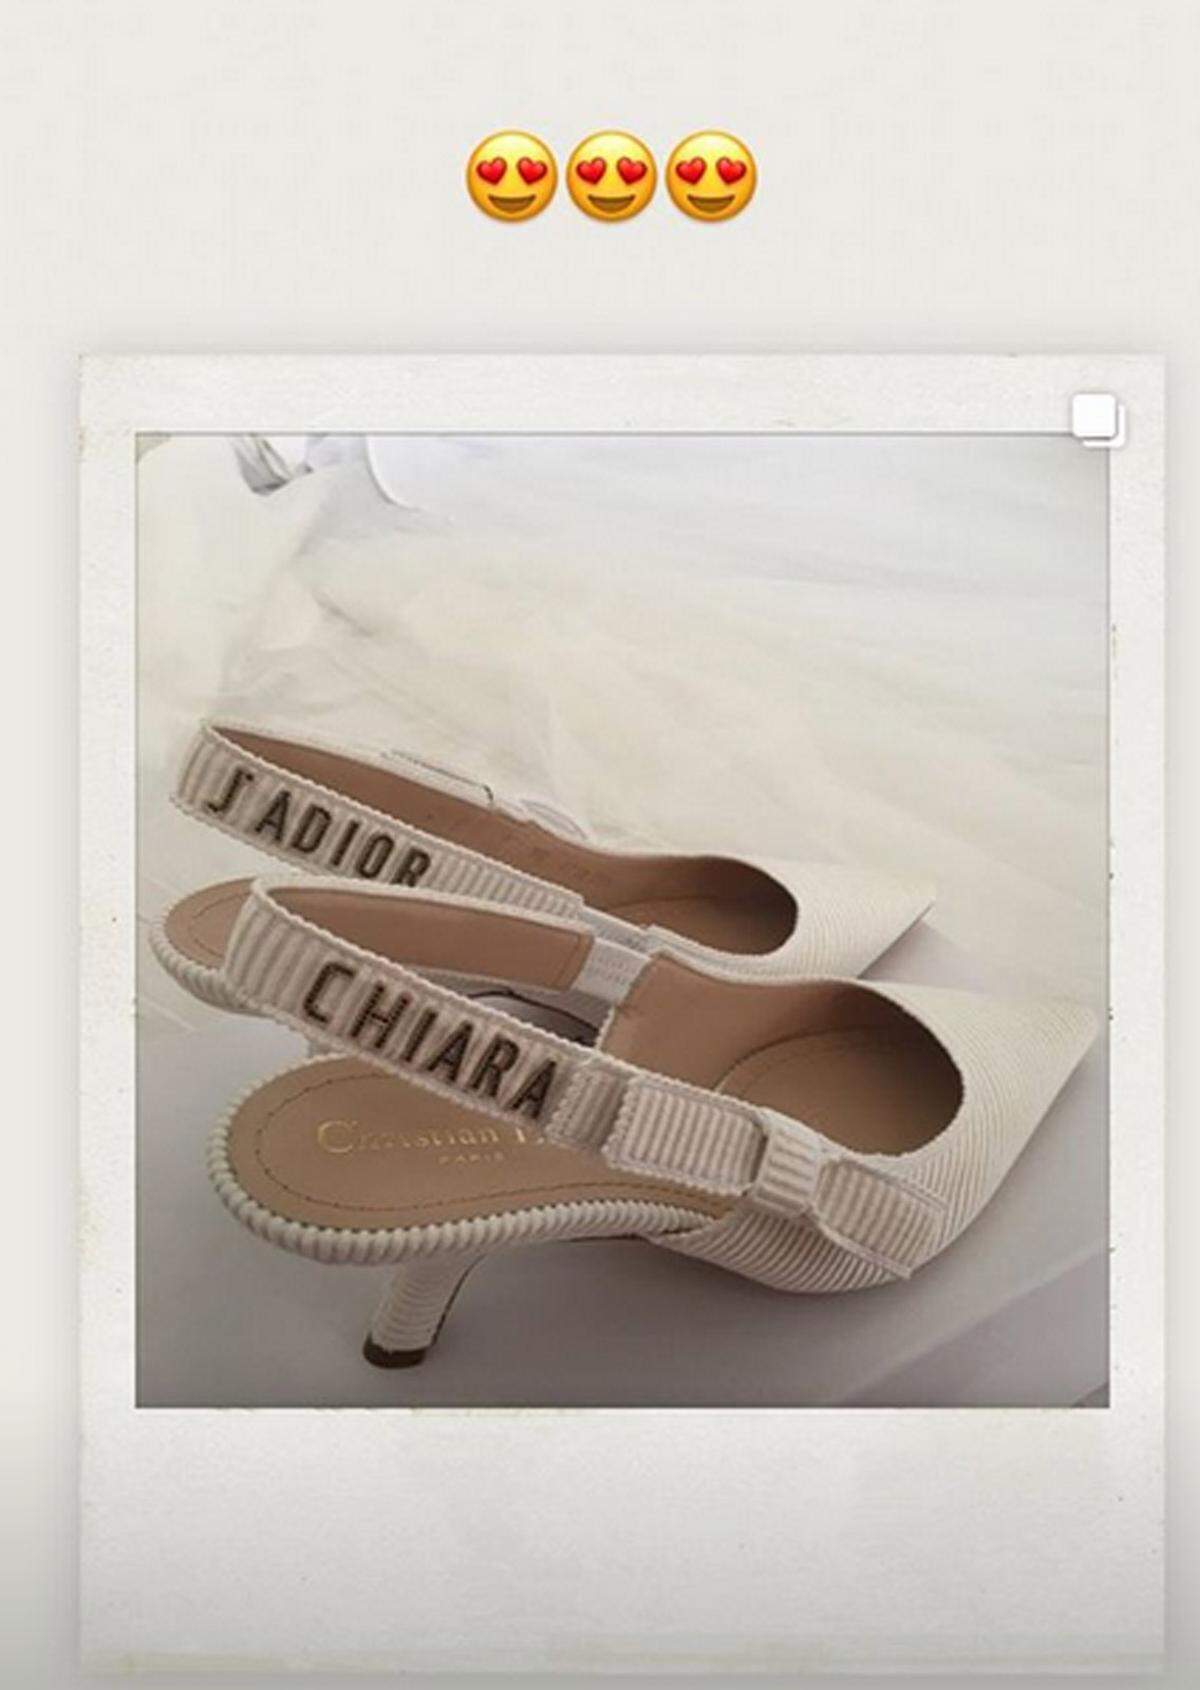 Die passenden Schuhe: "J'adore Chiara".